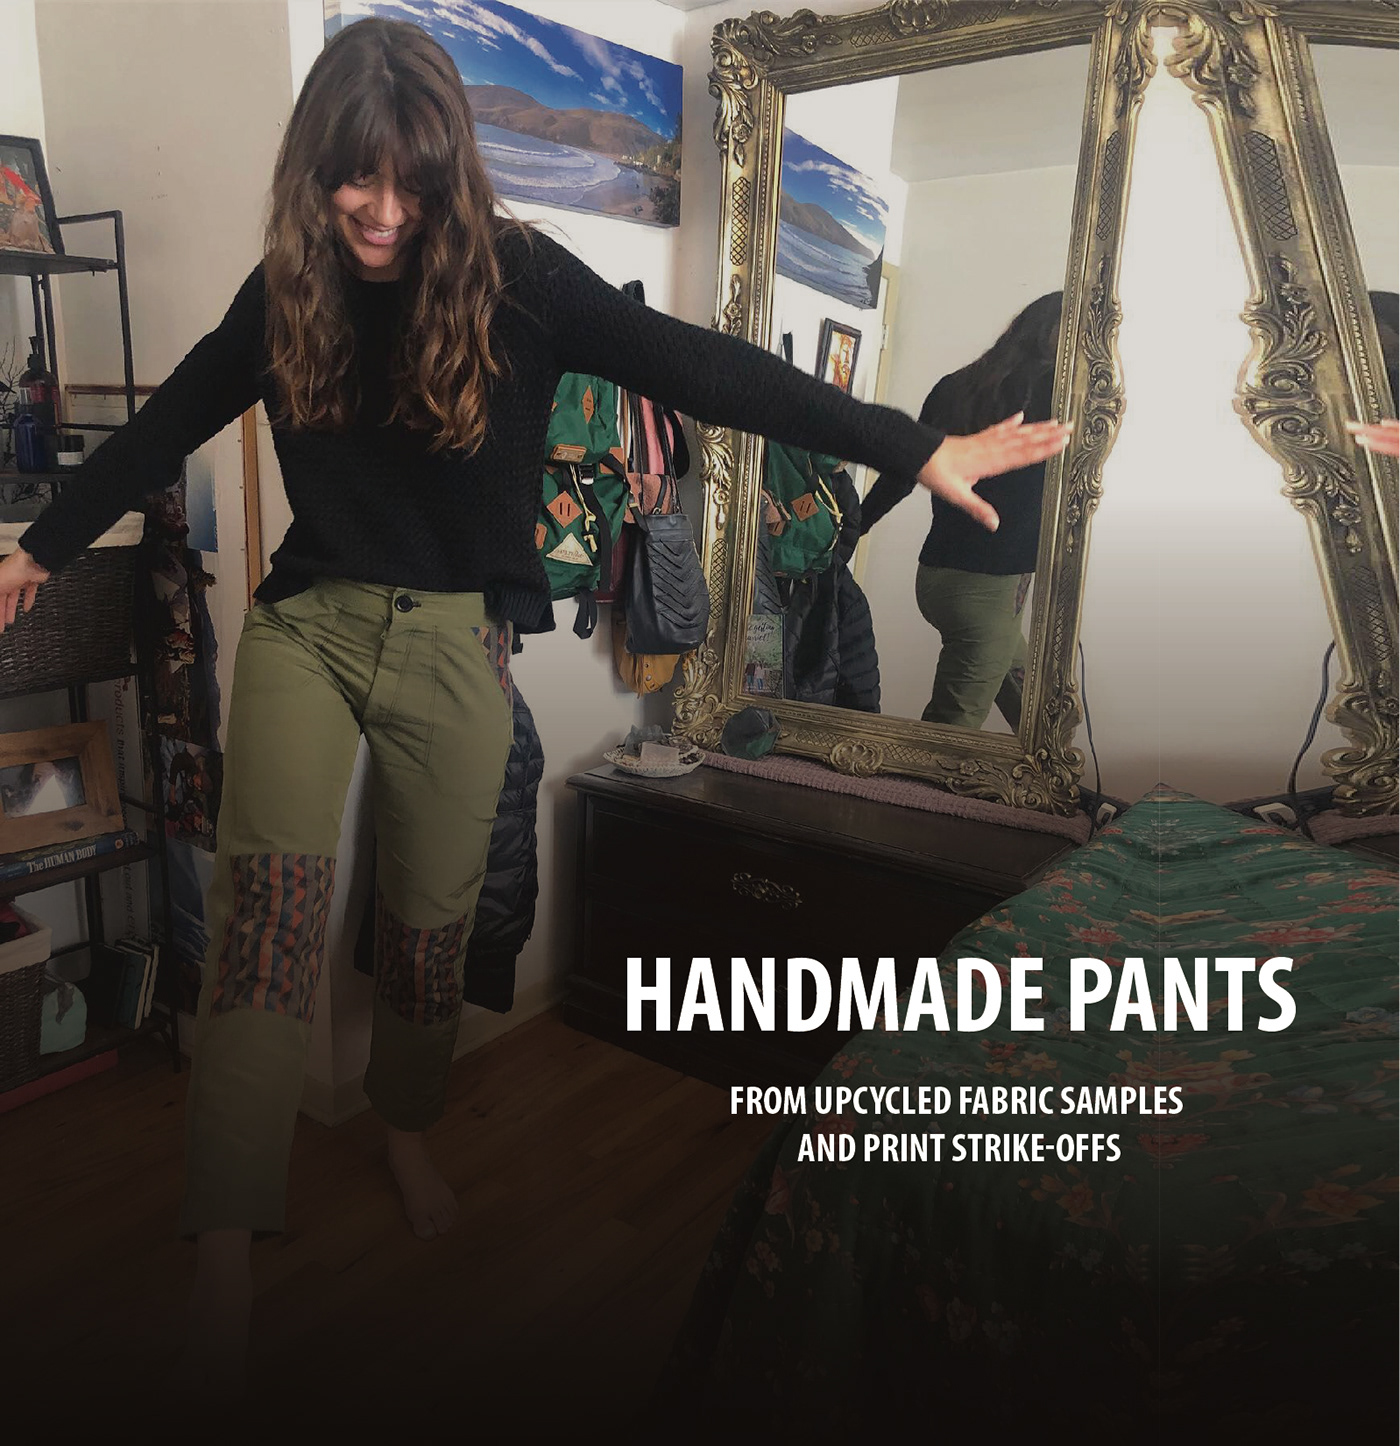 apparel Drafting handmade handsewn making pants pattern print sewing upcycle